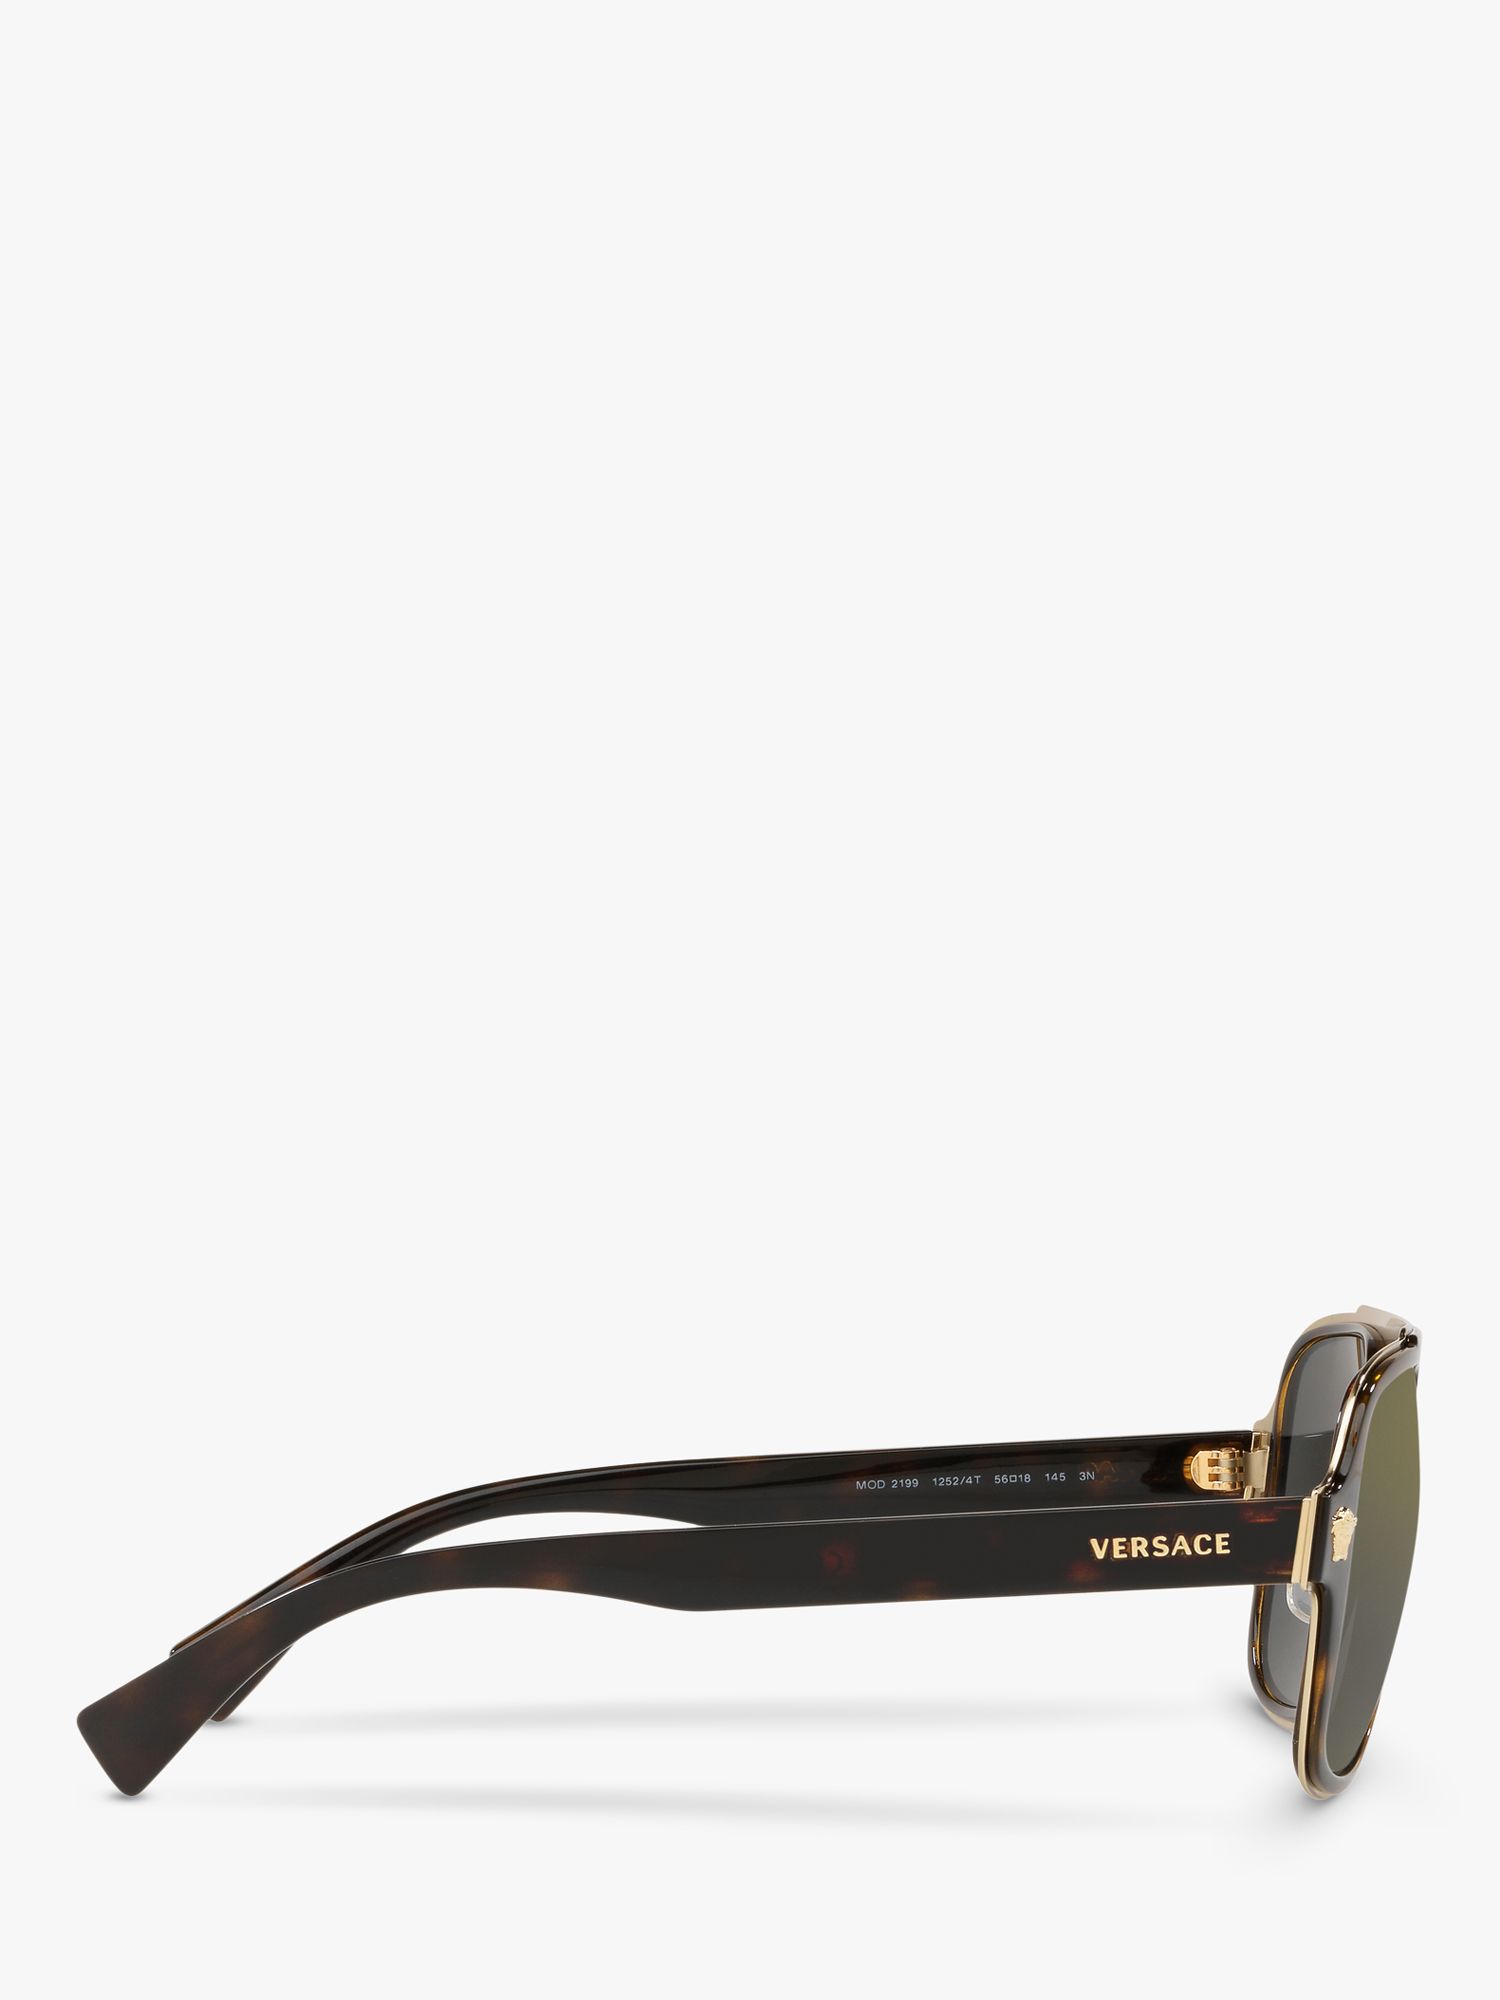 Buy Versace VE2199 Men's Geometric Sunglasses, Havana/Grey Online at johnlewis.com